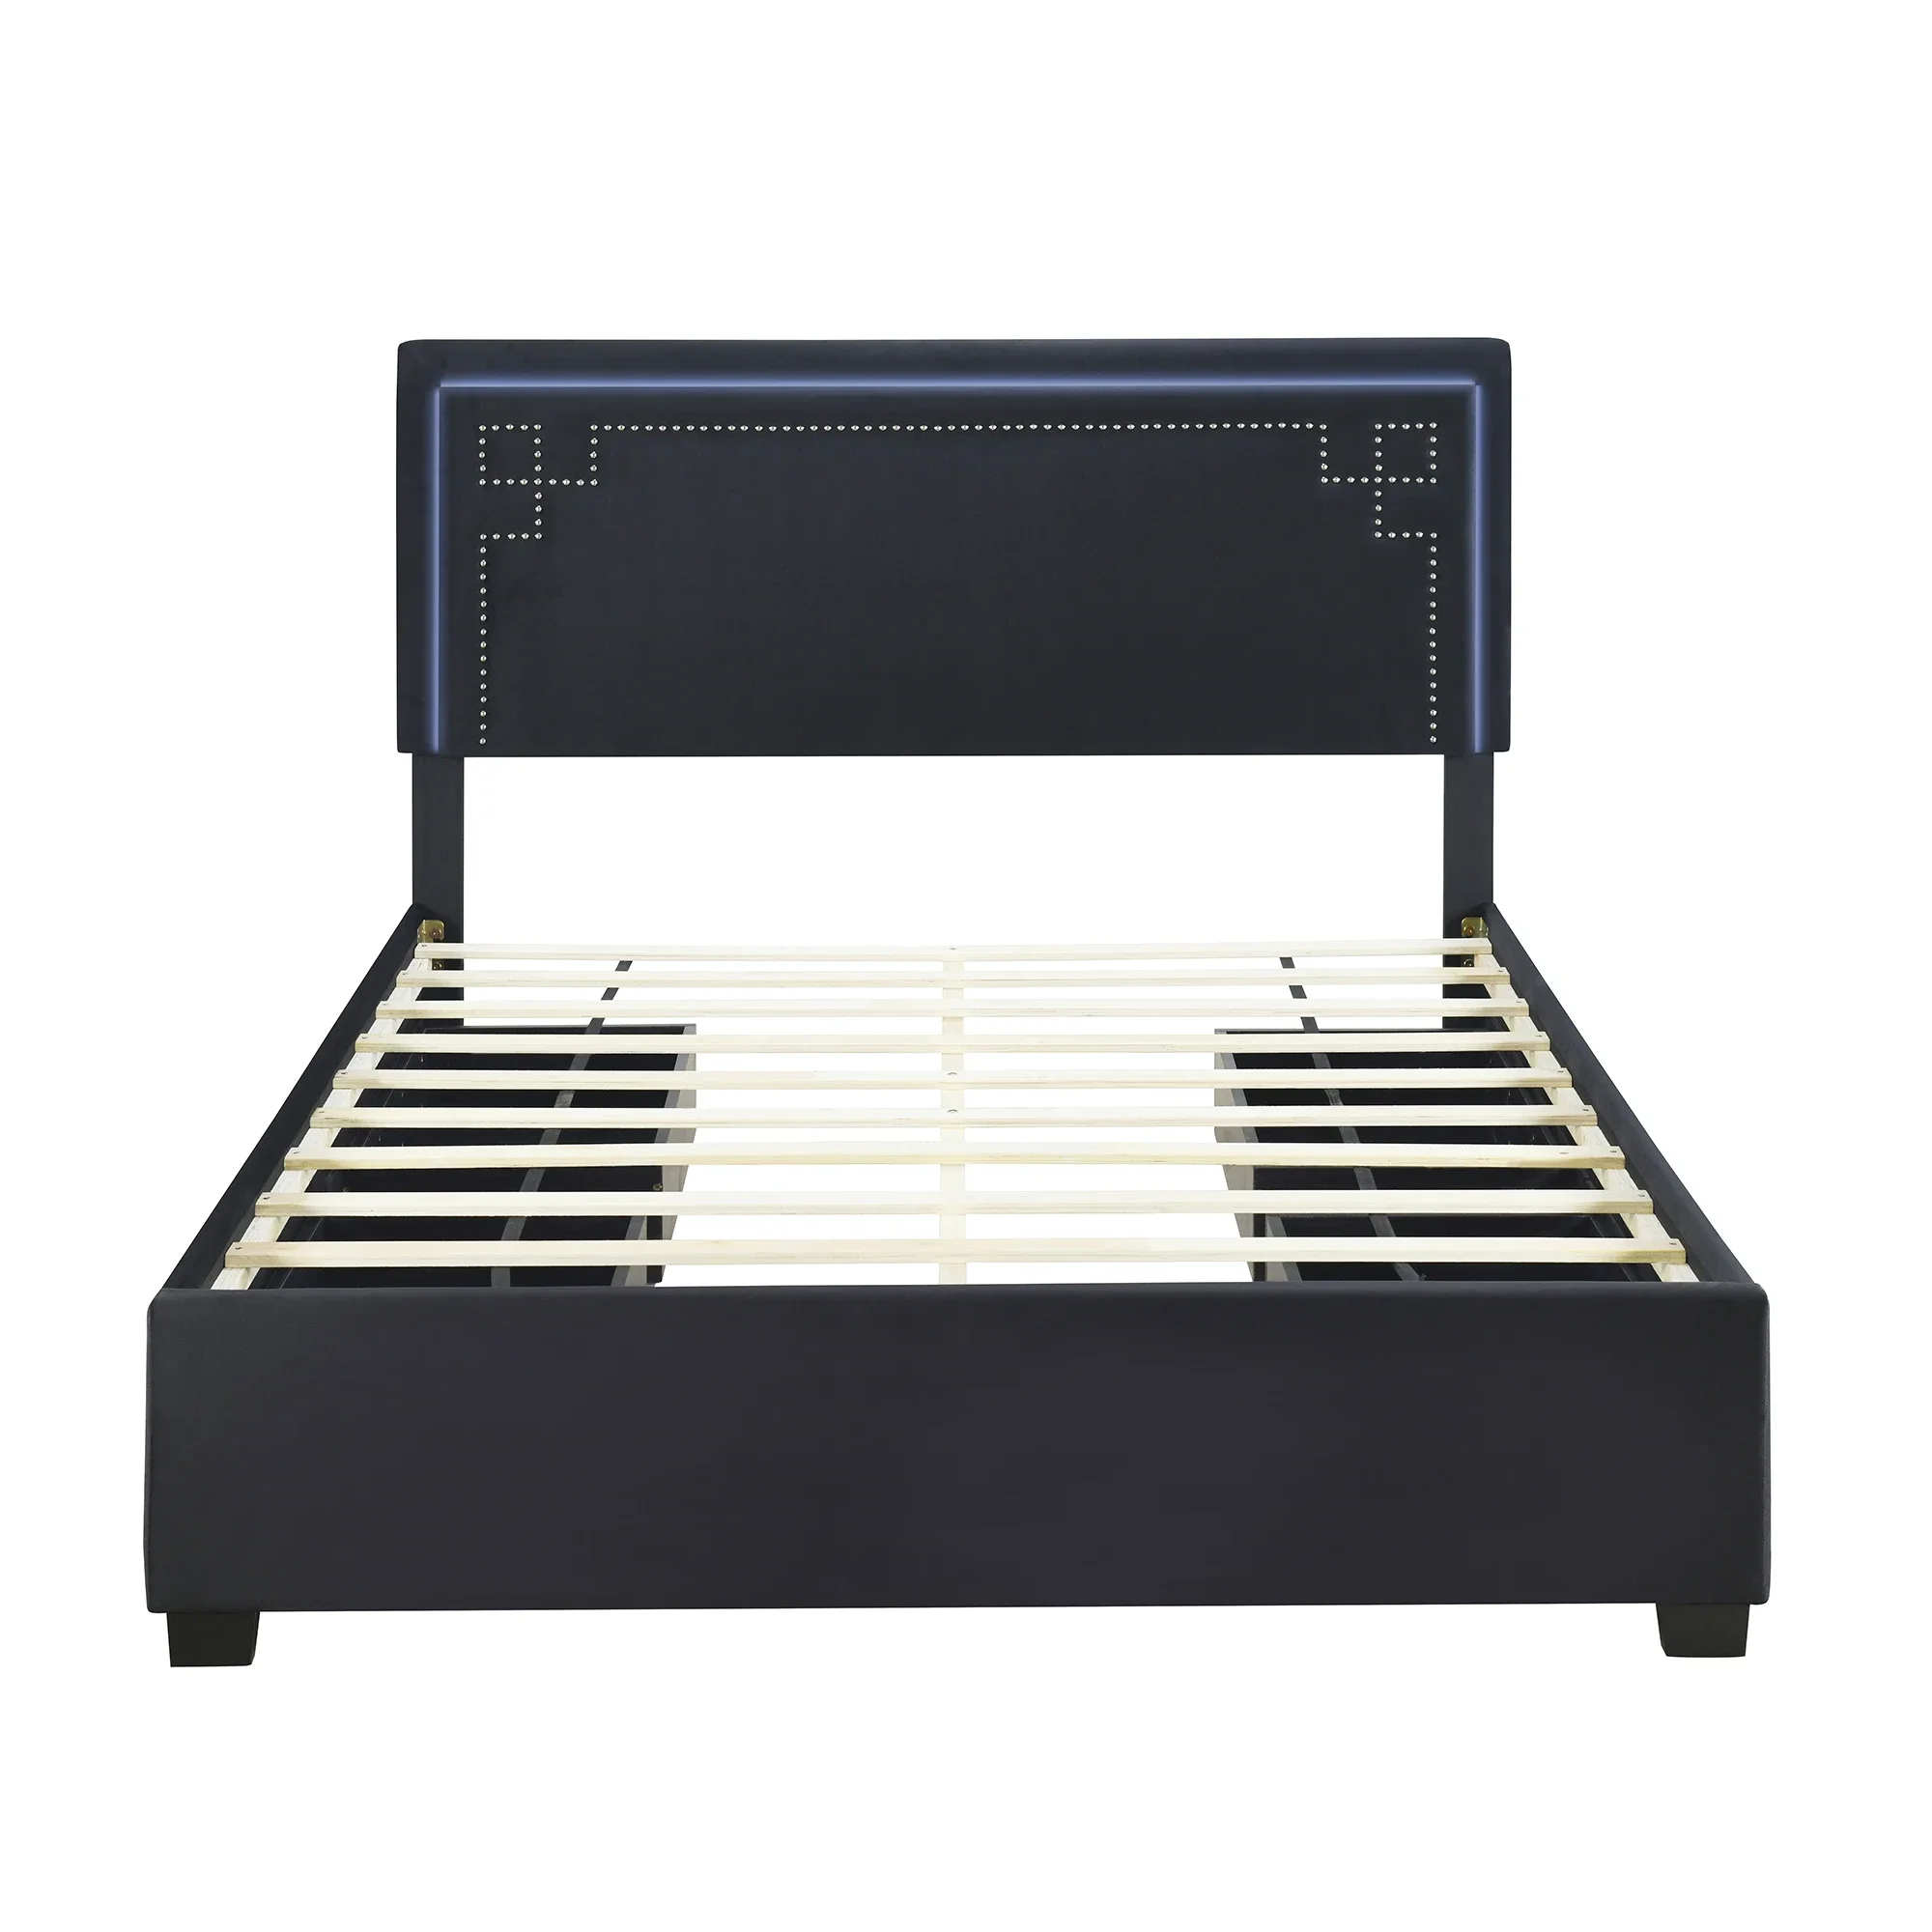 

Двуспальная кровать с мягкой платформой и украшенным заклепками изголовьем, светодиодная рама для кровати и 4 ящика, черного цвета